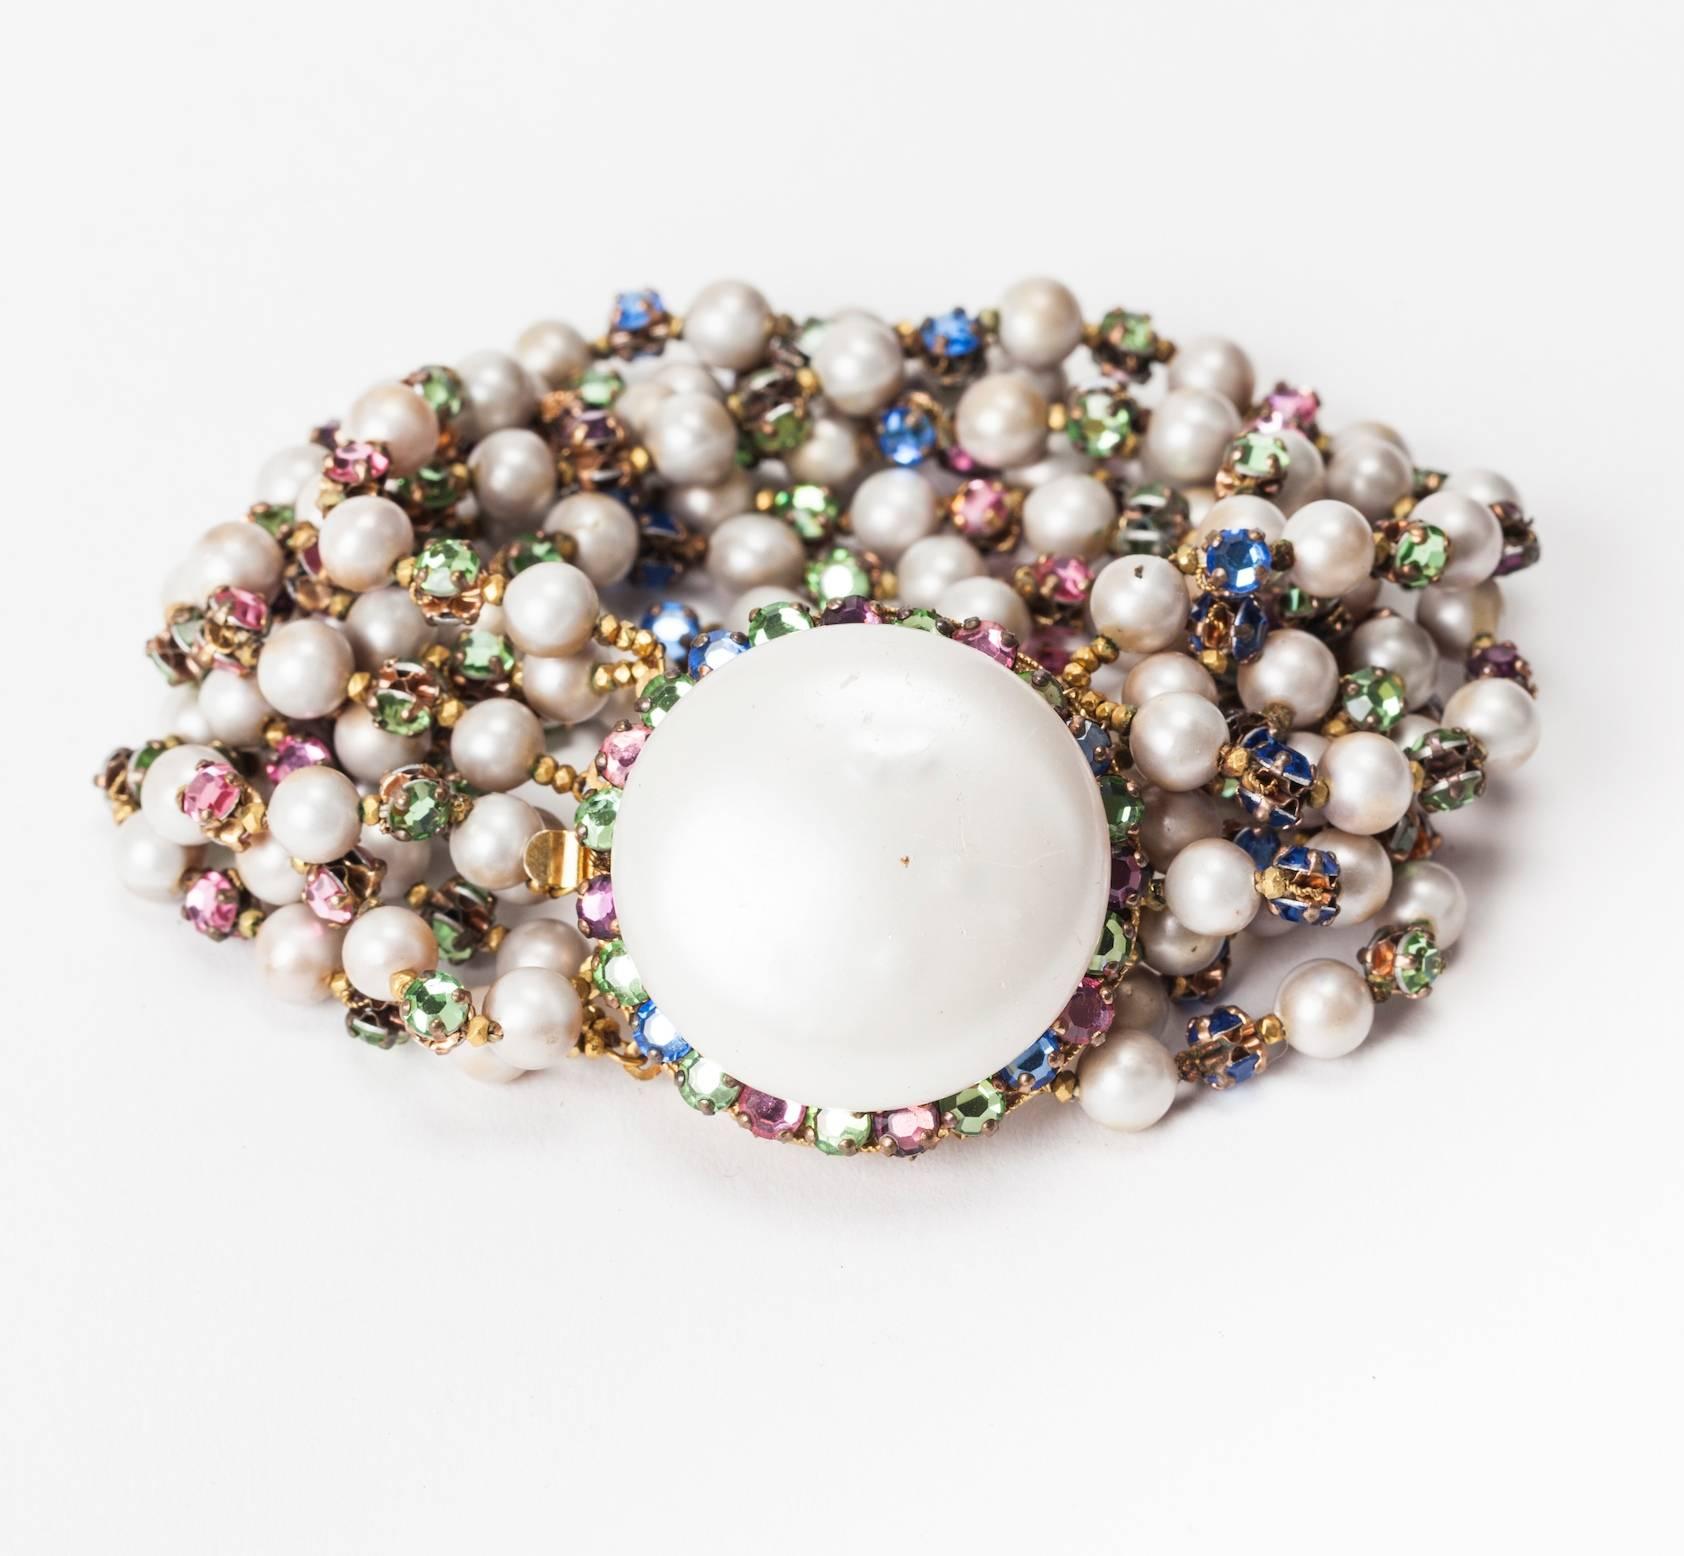 Bracelet Miriam Haskell composé de fausses perles d'eau douce et d'intercalaires en cristal pastel multicolore et rose monte. Chaque entretoise est câblée à la main dos à dos pour former un connecteur bijou. Bracelet large à 8 brins. Excellent état.